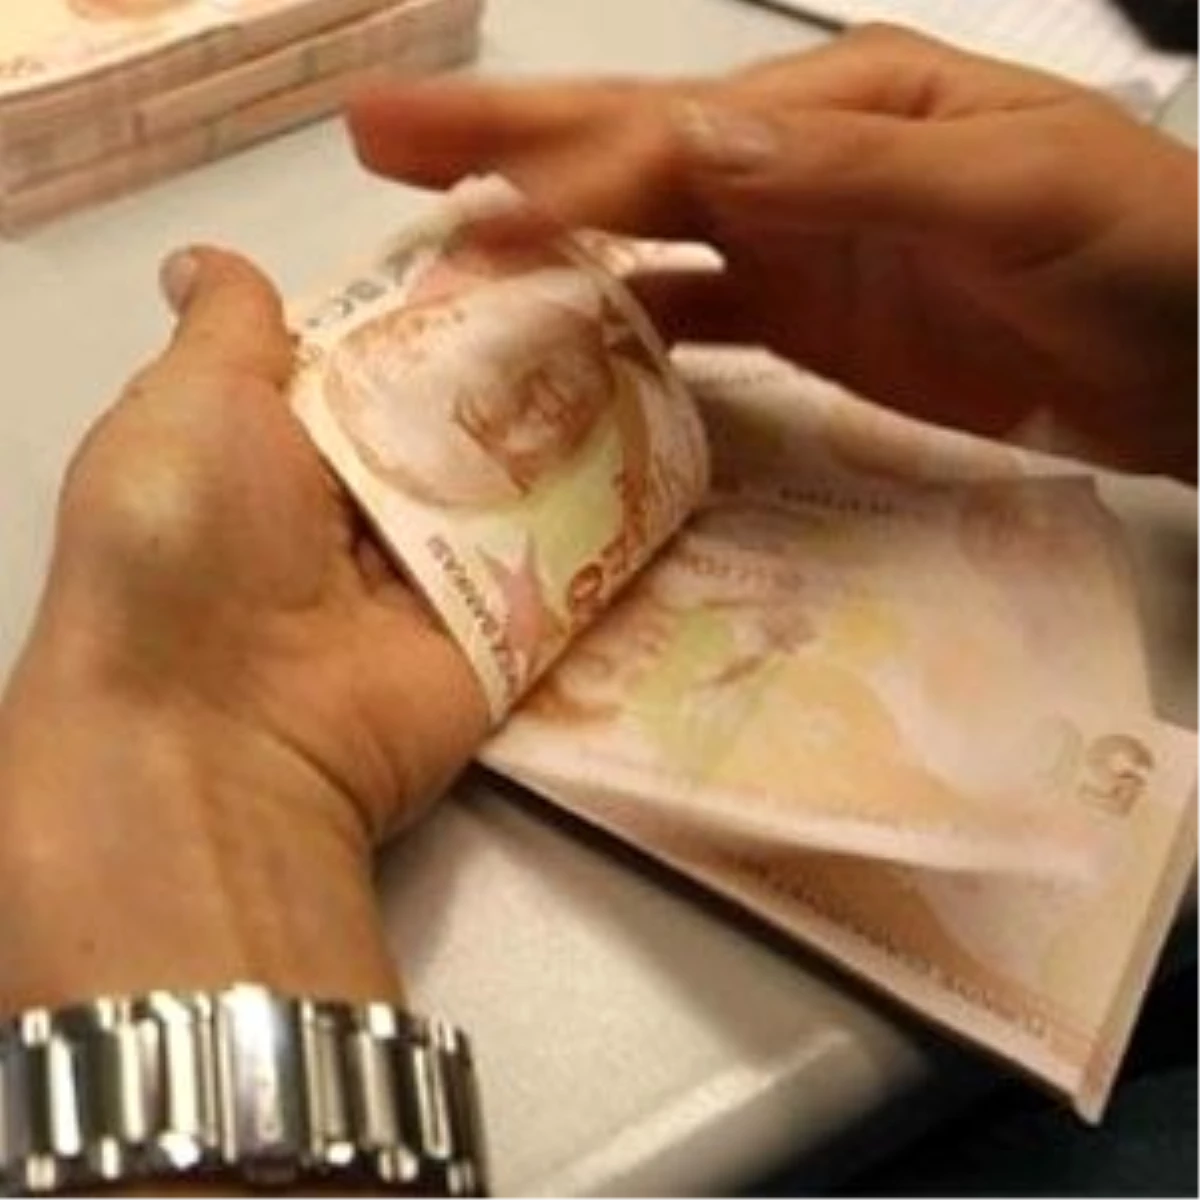 Asgari Ücret(1): Asgari Ücrete 2012 Yılında Yüzde 12.37 Yıllık Artış